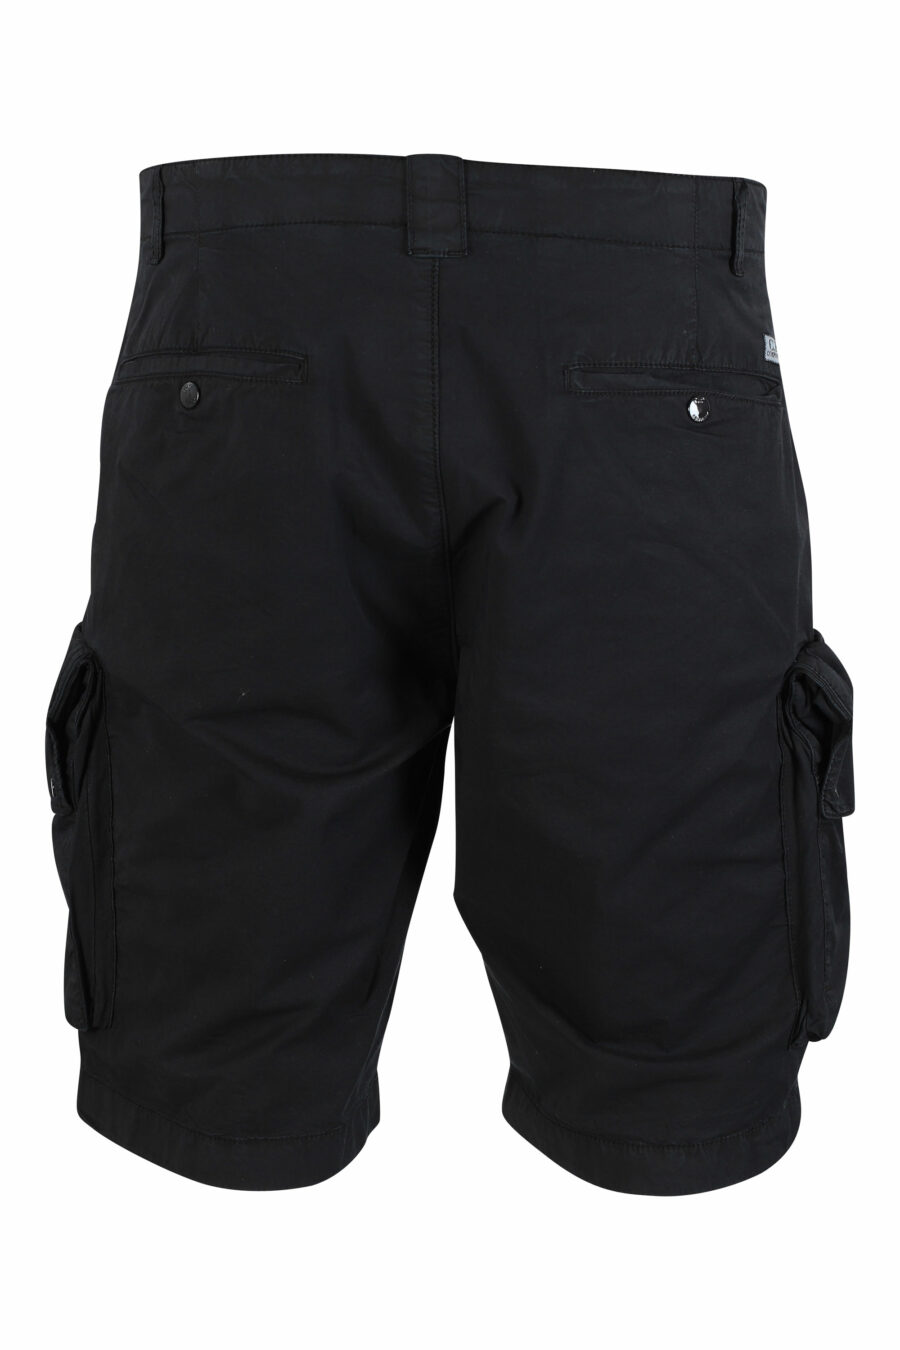 C.P. Company - Pantalón corto negro con bolsillos laterales y